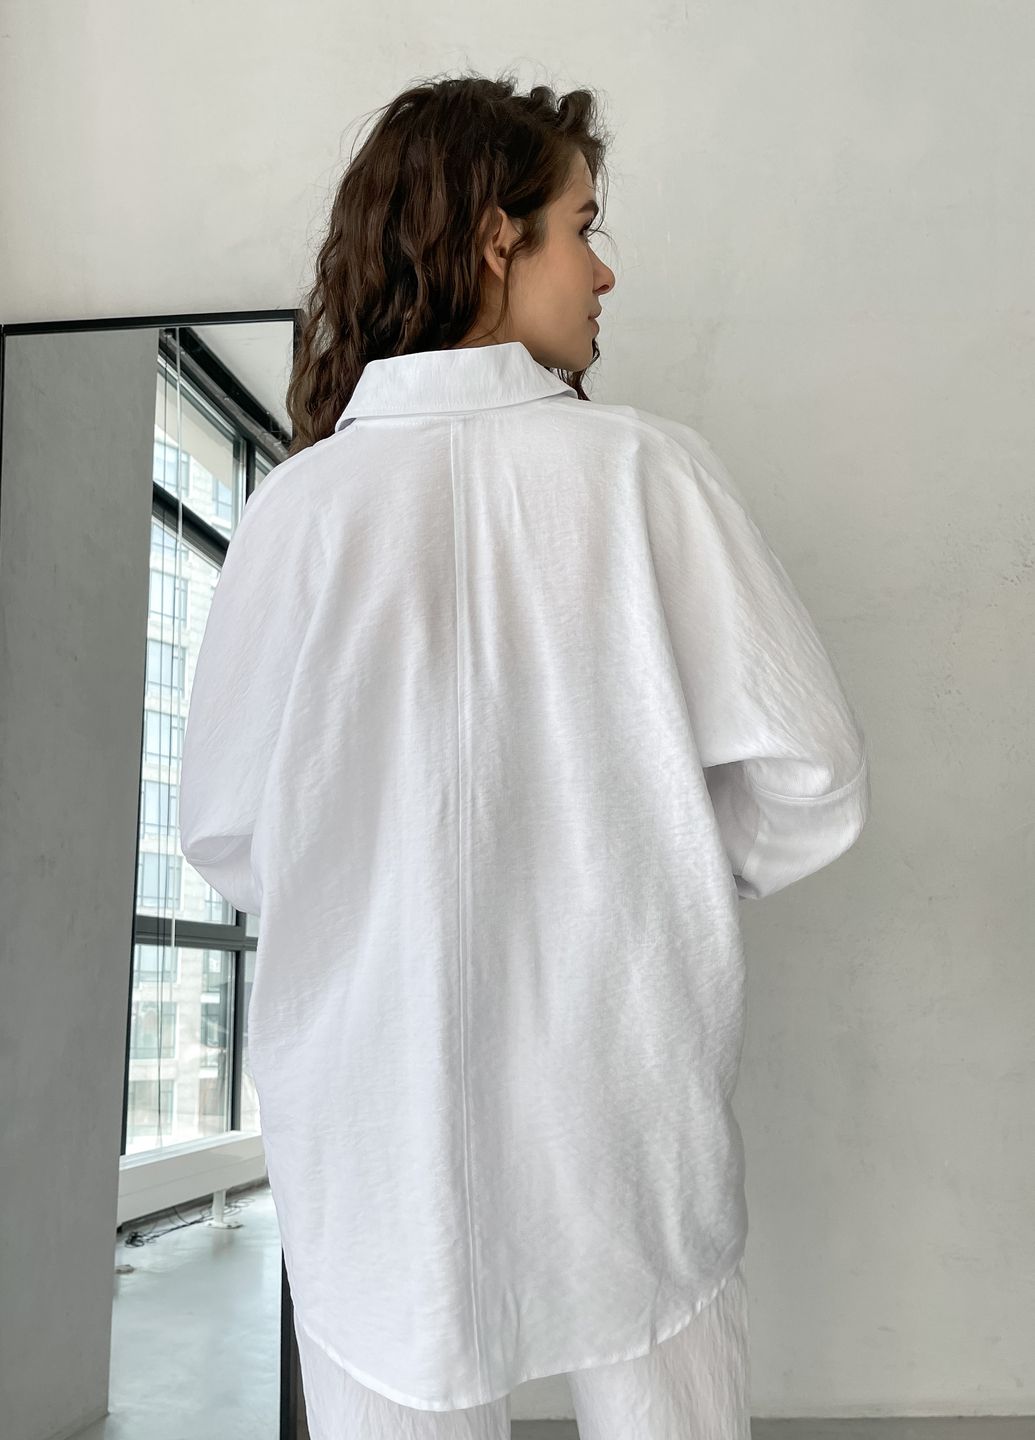 Купить Рубашка женская с длинным рукавом белого цвета из льна Merlini Беллуно 200000242, размер 42-44 в интернет-магазине